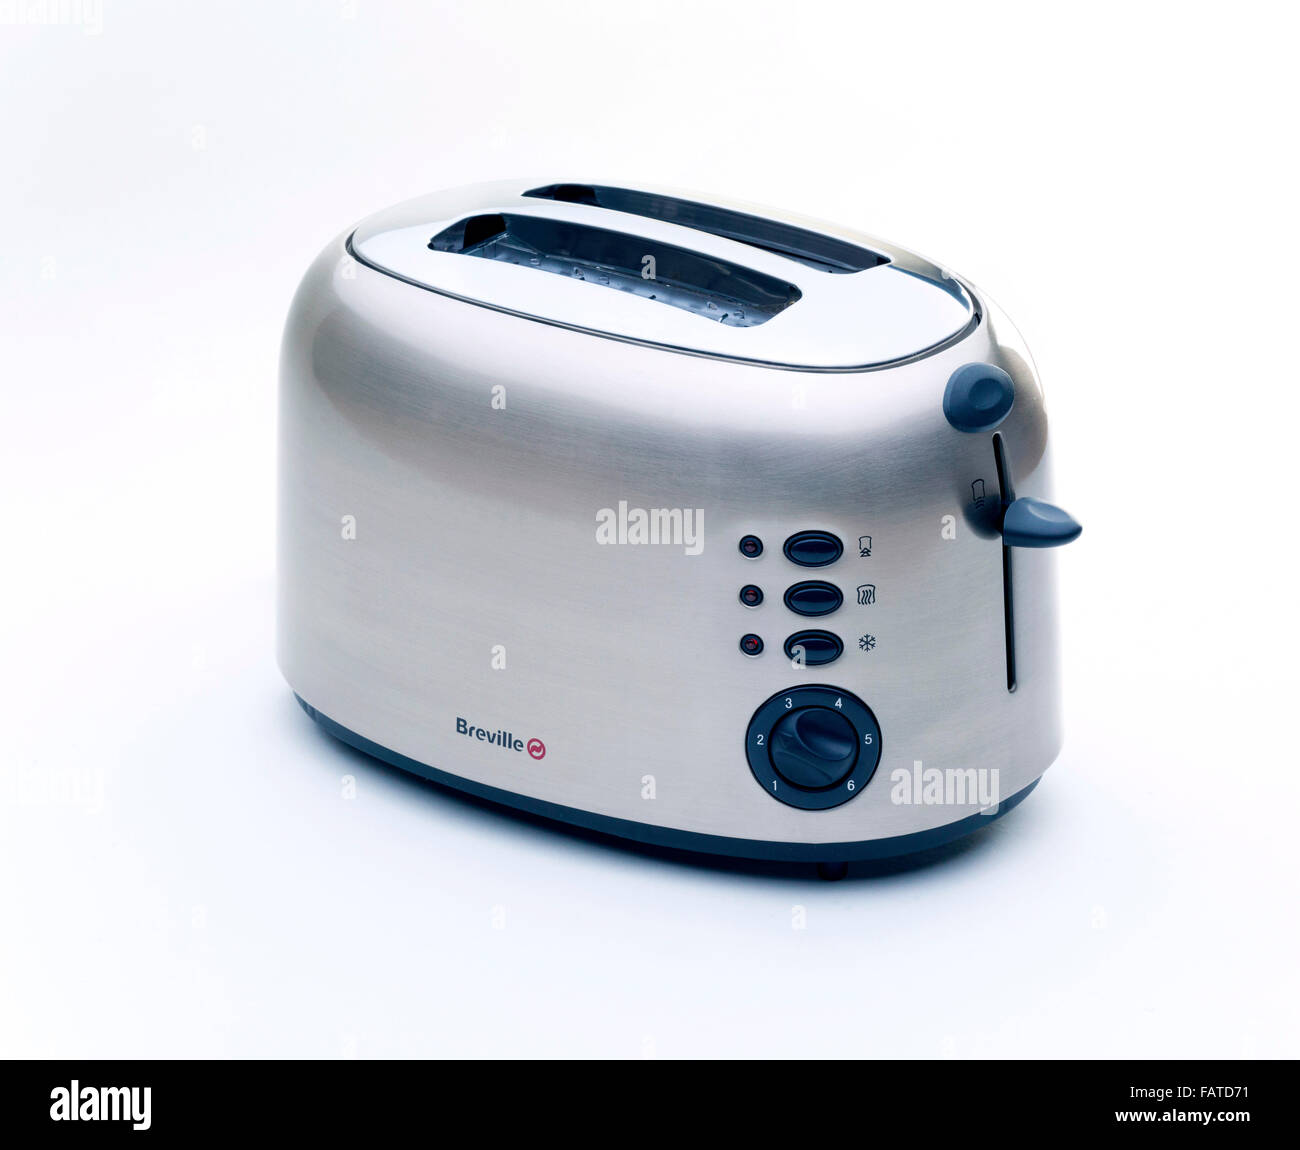 Breville elektrische toaster Stockfoto